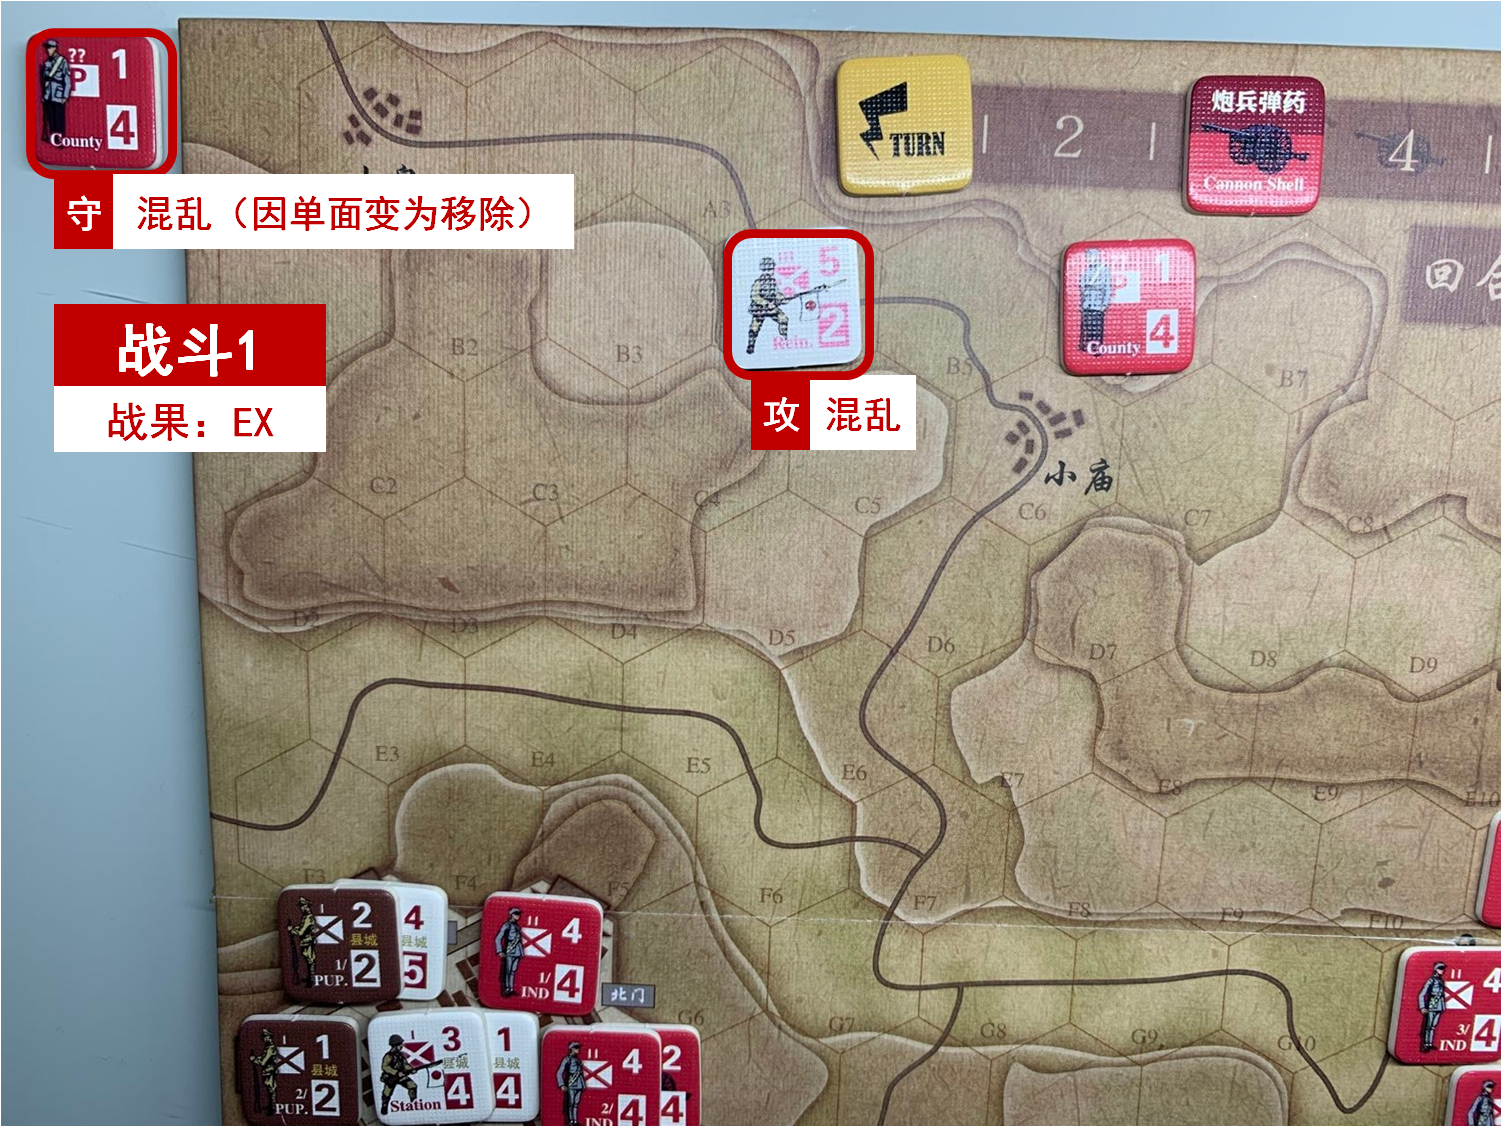 第一回合 日方战斗阶段 战斗1 战斗结果